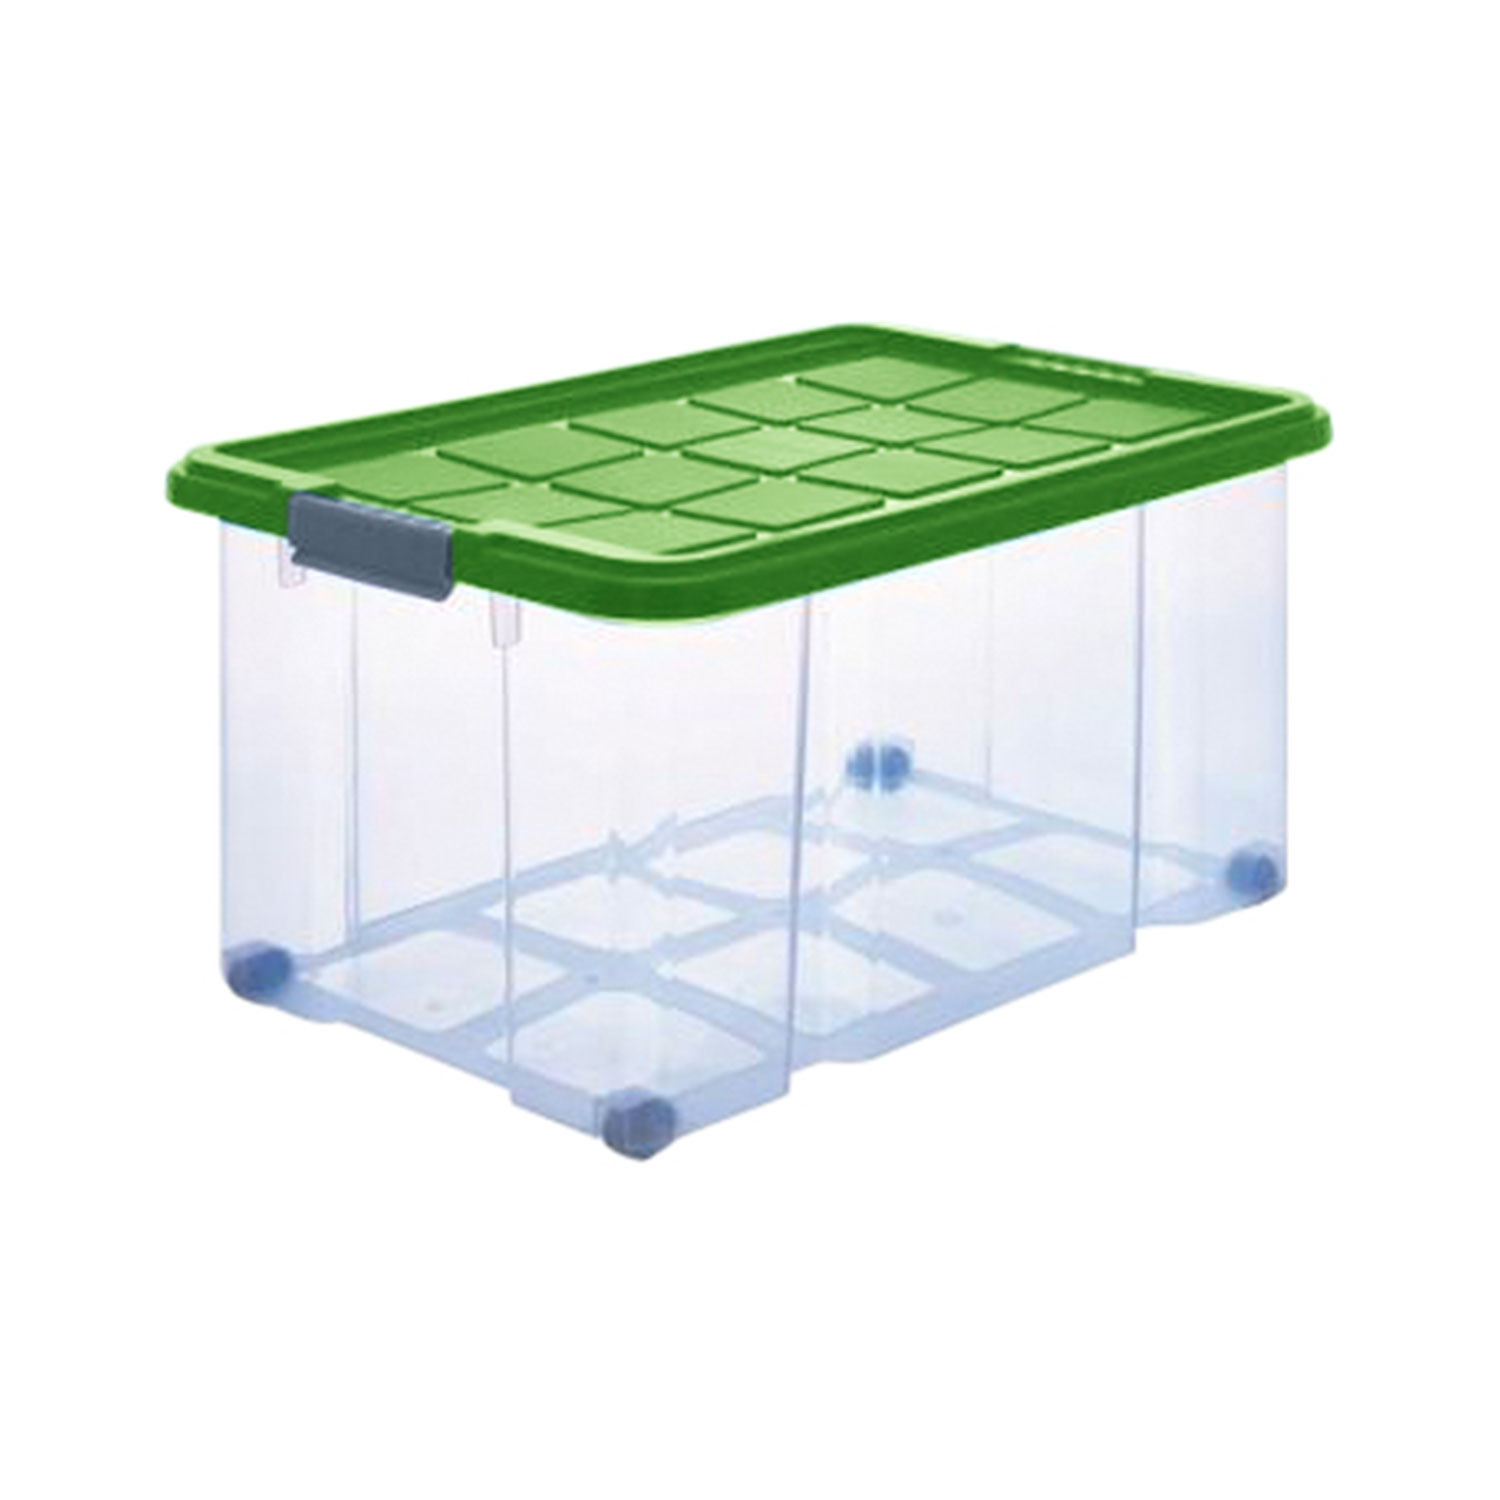 Aufbewahrungsbox "Eurobox" 55 L in grün, Kunststoffbox